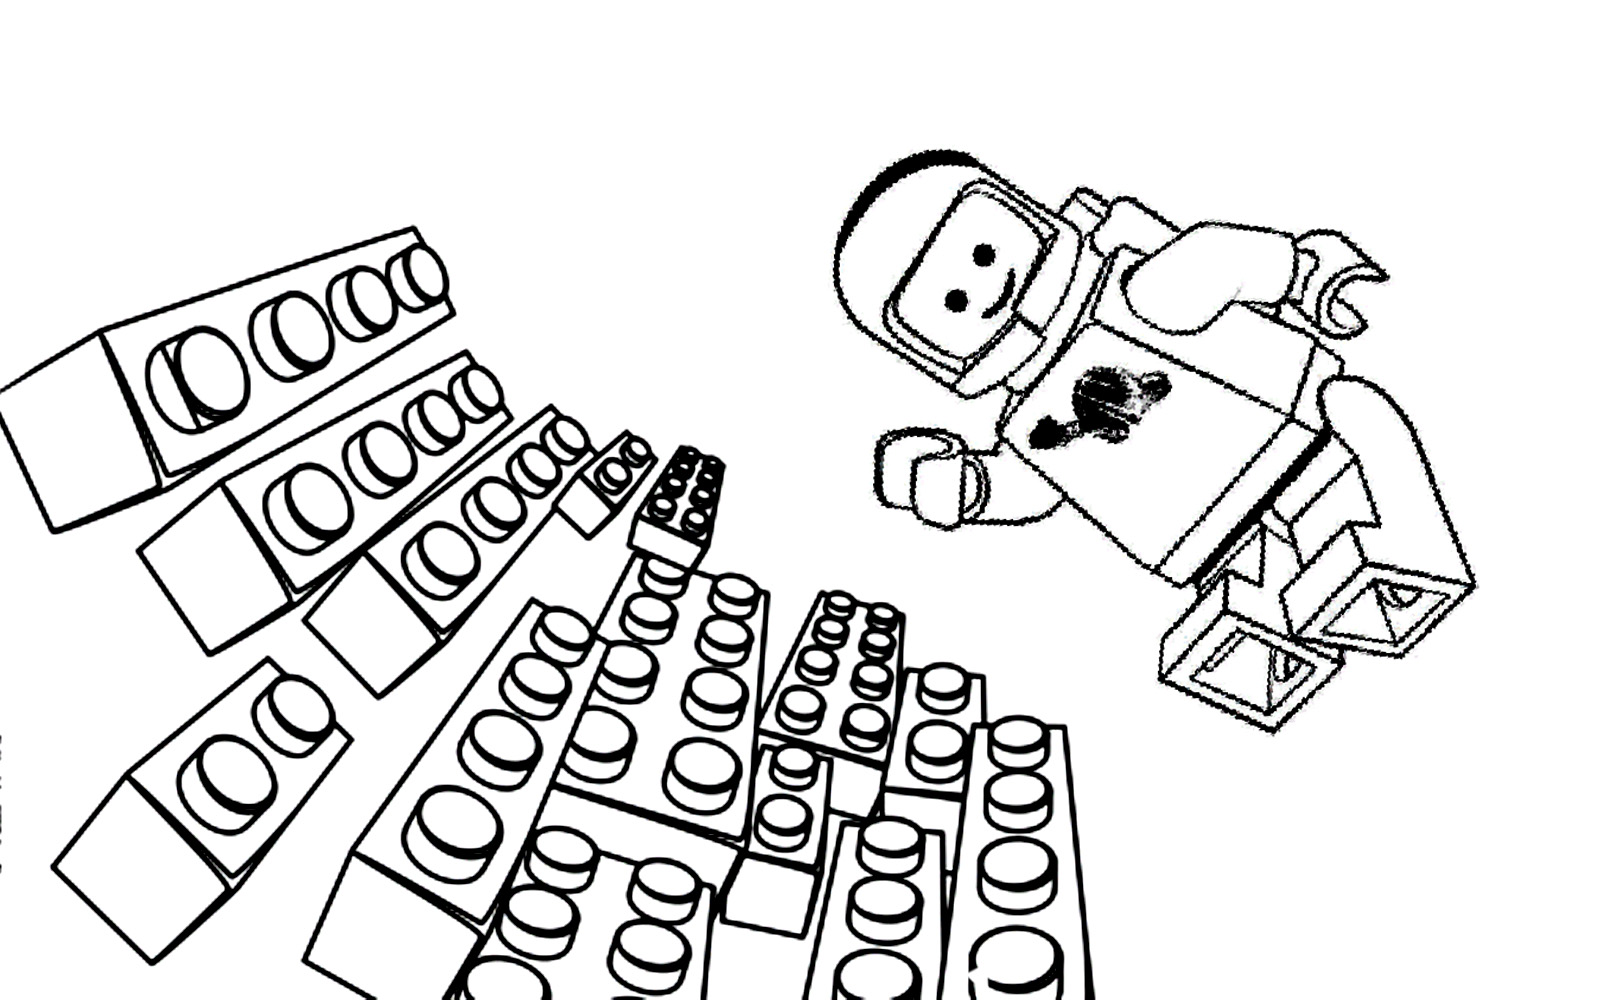 ¡Benny el astronauta vuela sobre ladrillos Lego en gravedad cero!